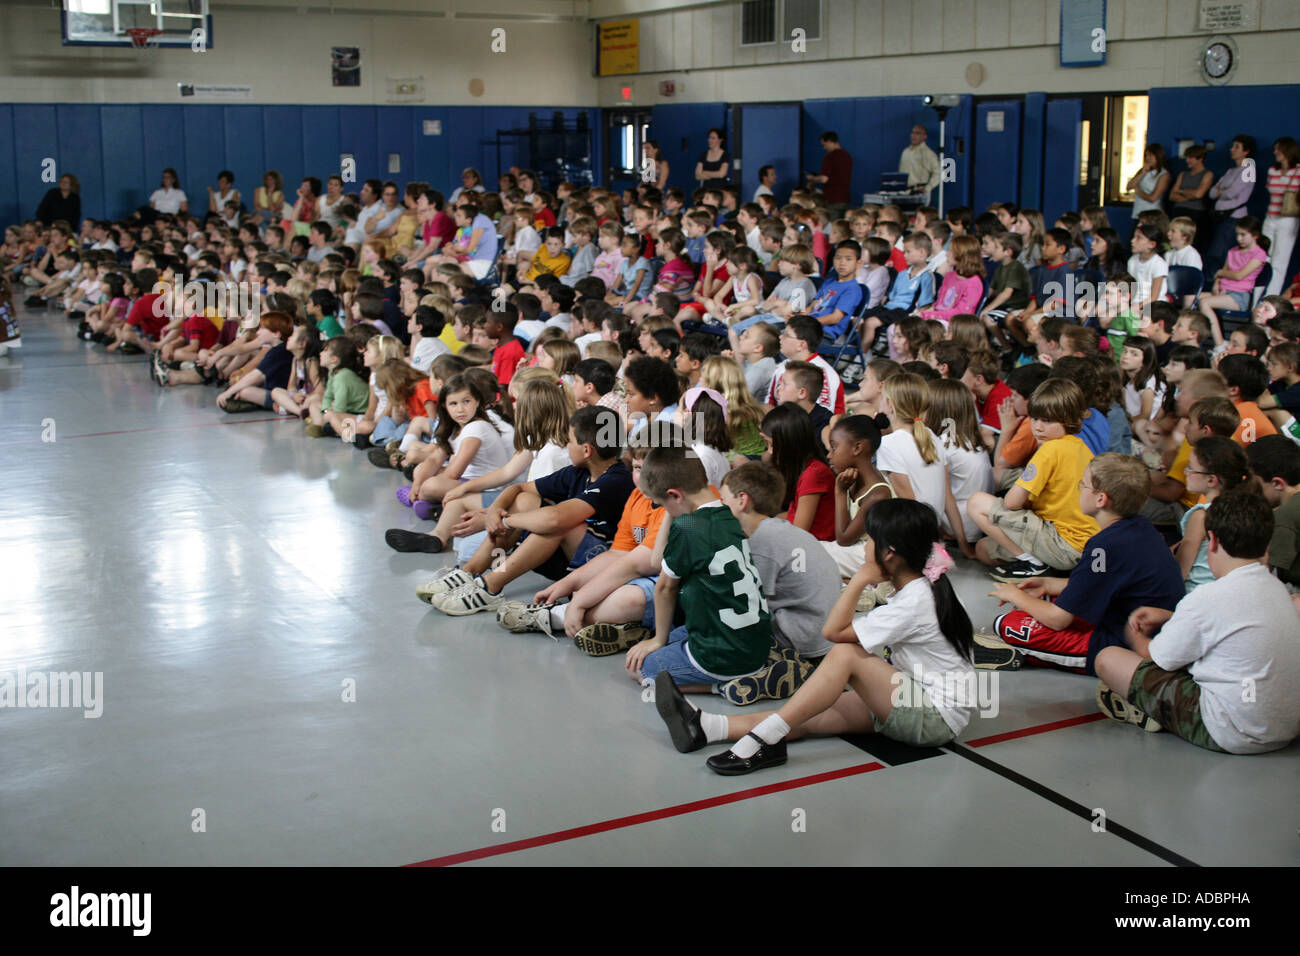 US-Studenten versammelten sich in einer Turnhalle sitzen auf Boden während einer Schulversammlung Stockfoto